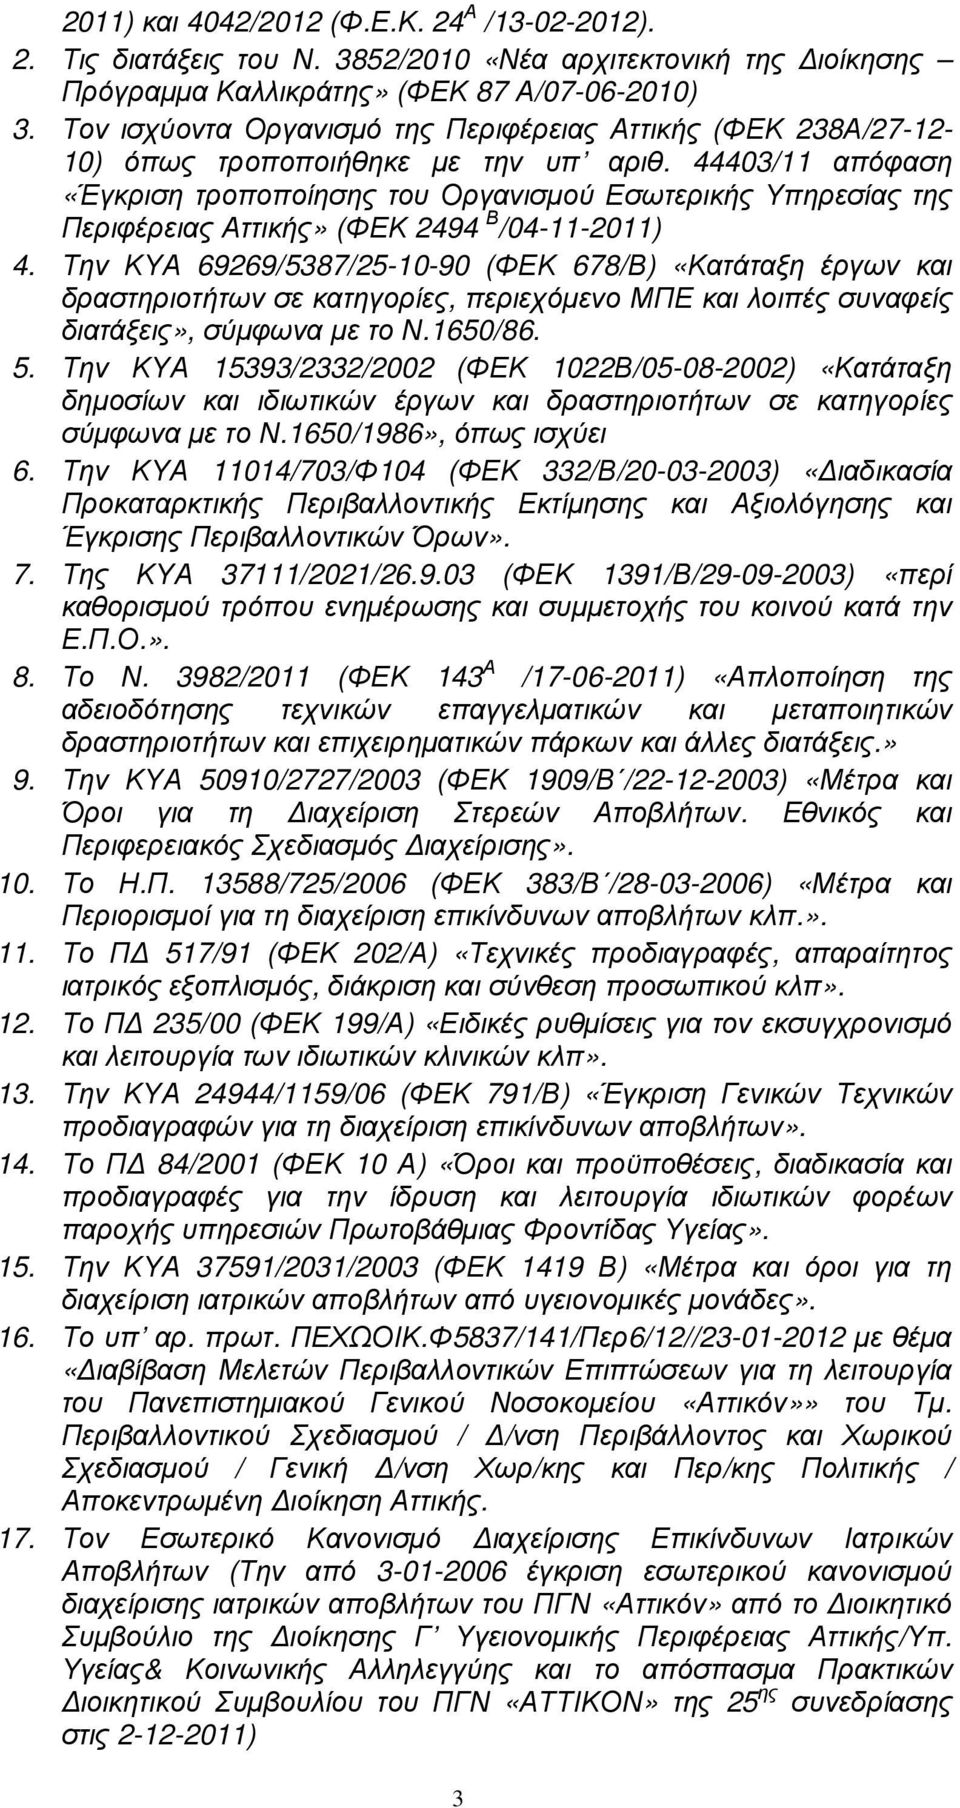 44403/11 απόφαση «Έγκριση τροποποίησης του Οργανισµού Εσωτερικής Υπηρεσίας της Περιφέρειας Αττικής» (ΦΕΚ 2494 Β /04-11-2011) 4.